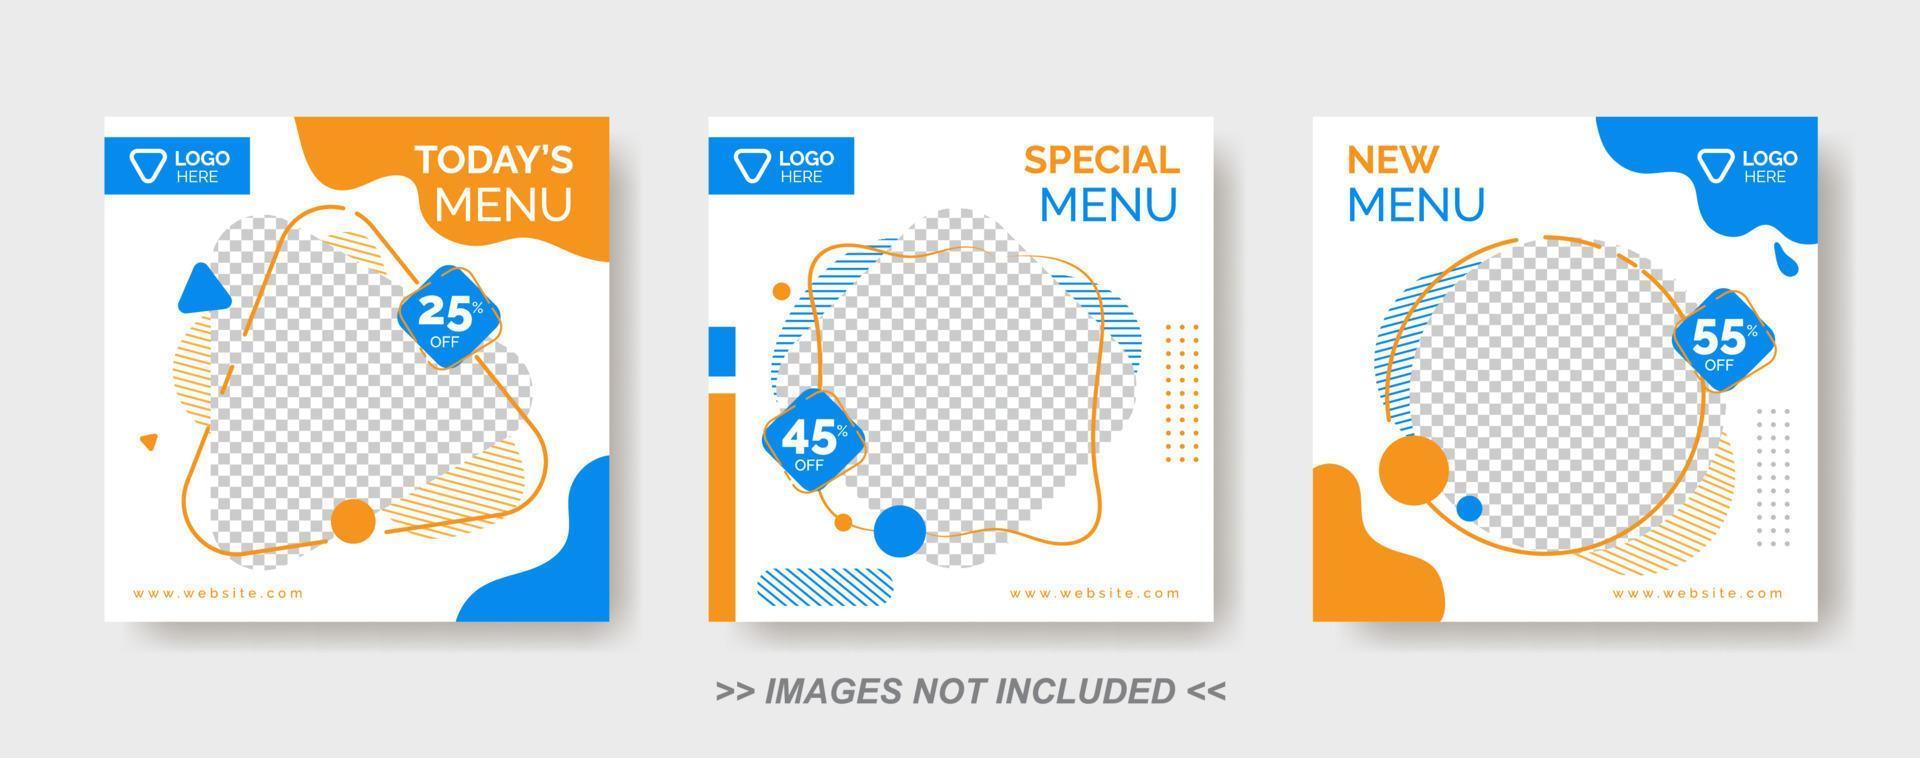 sjabloon voor spandoekmenu voor eten, postsjabloon voor sociale media, banner voor heerlijk eten restaurant vector